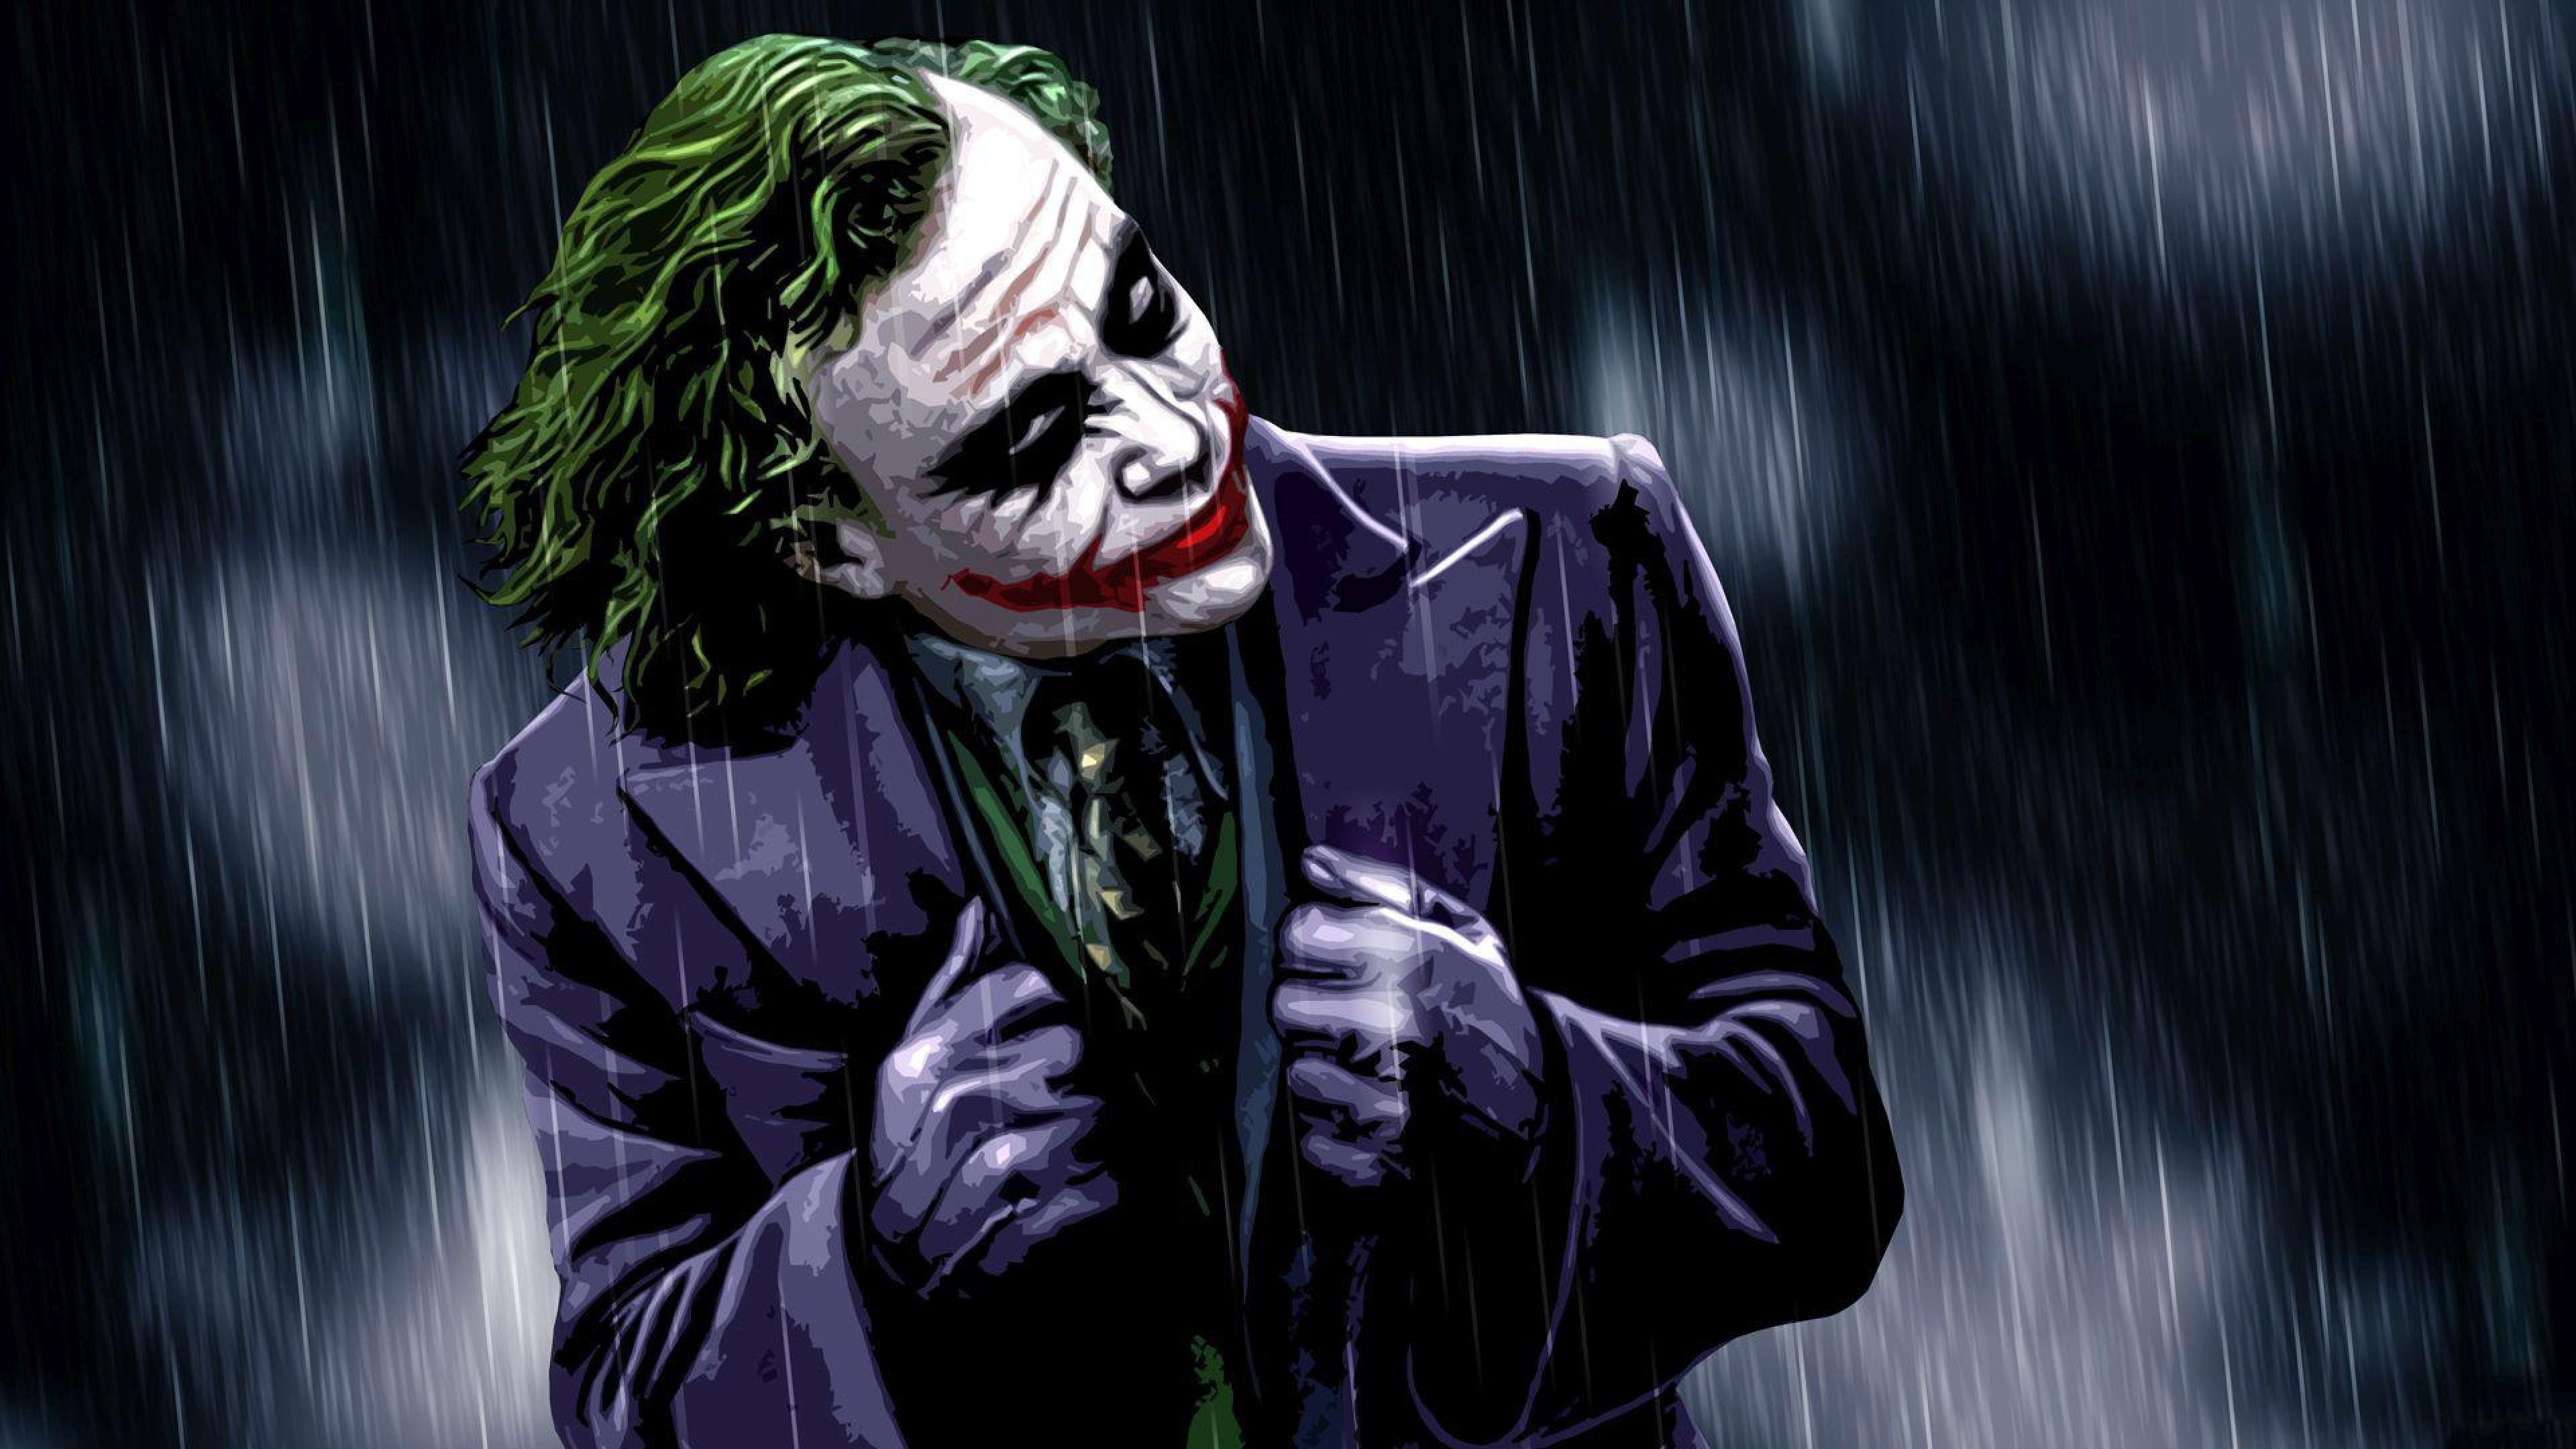 The Joker The Dark Knight Desktop Wallpaper HD For Mobile Phones